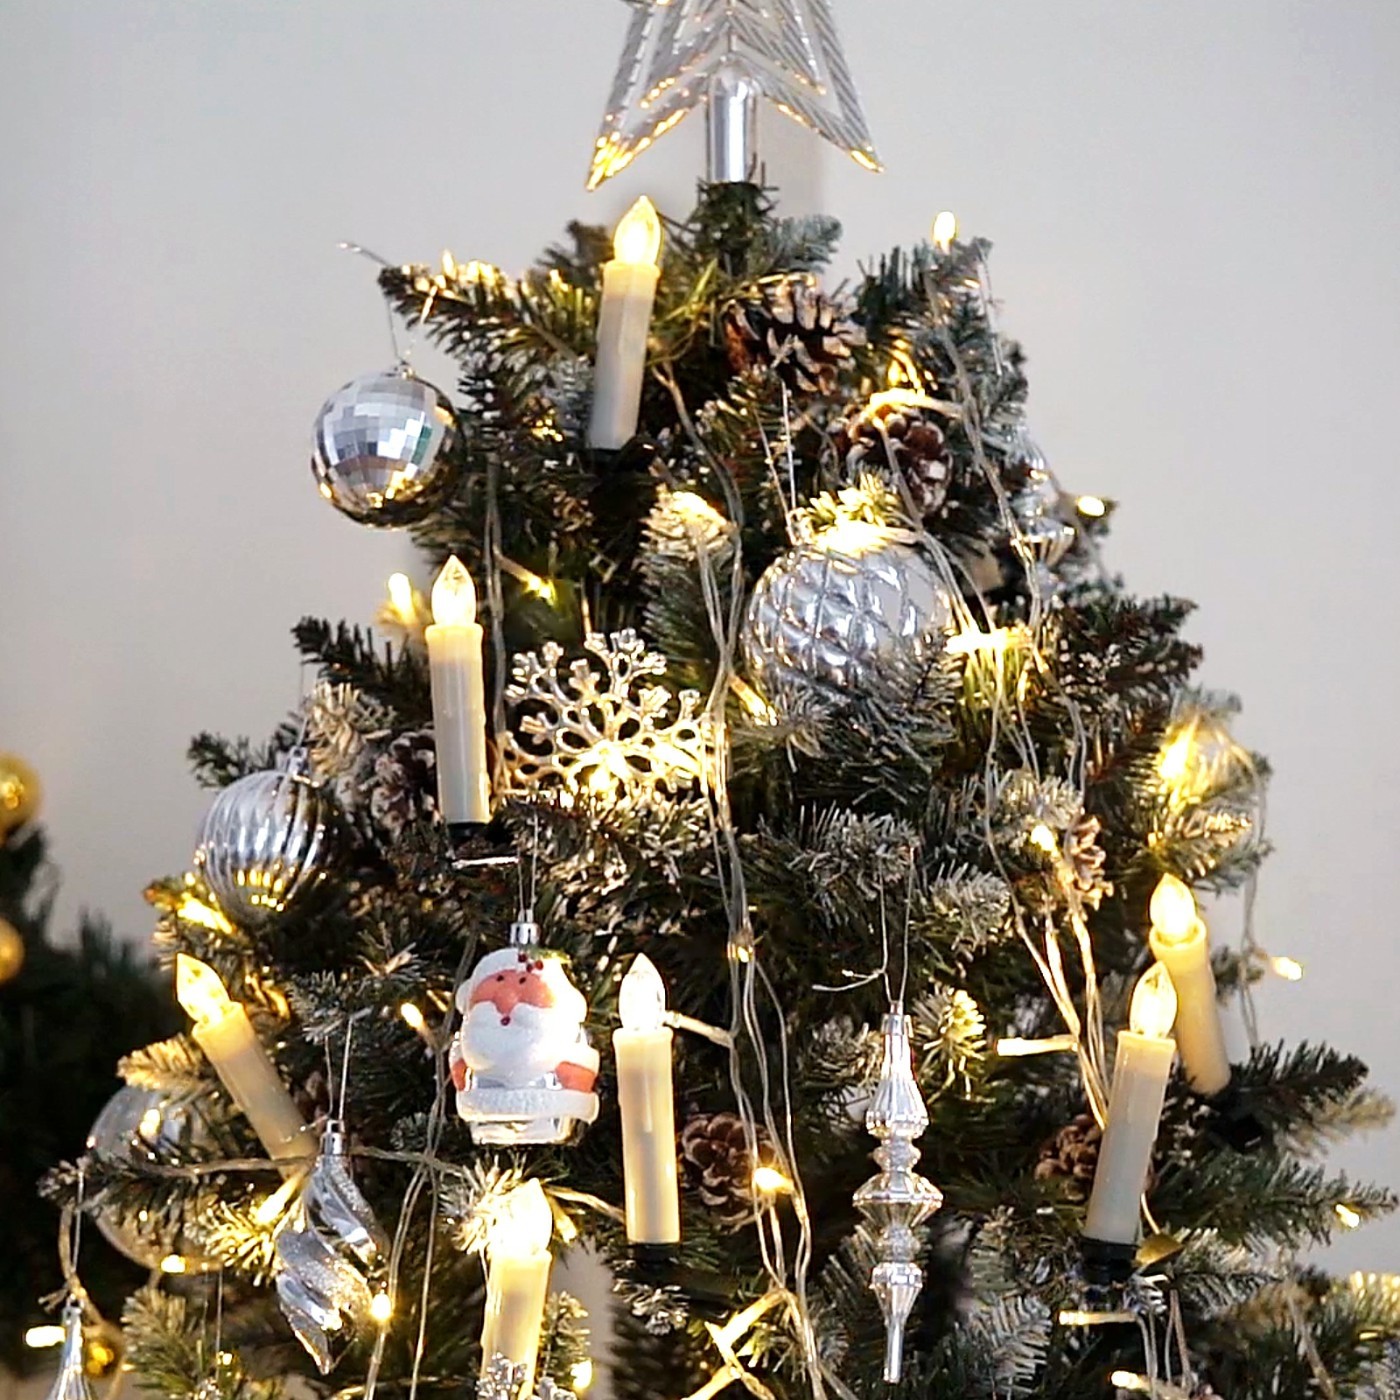 Weihnachten IP44 Wasserdicht,f/ür Weihnachtsbaum Hengda 10er LED Kerzen Kabellos,Warmwei/ß /& RGB Flammenlose Weihnachtskerzen mit realistischen tanzenden LED Flammen Weihnachtsdeko